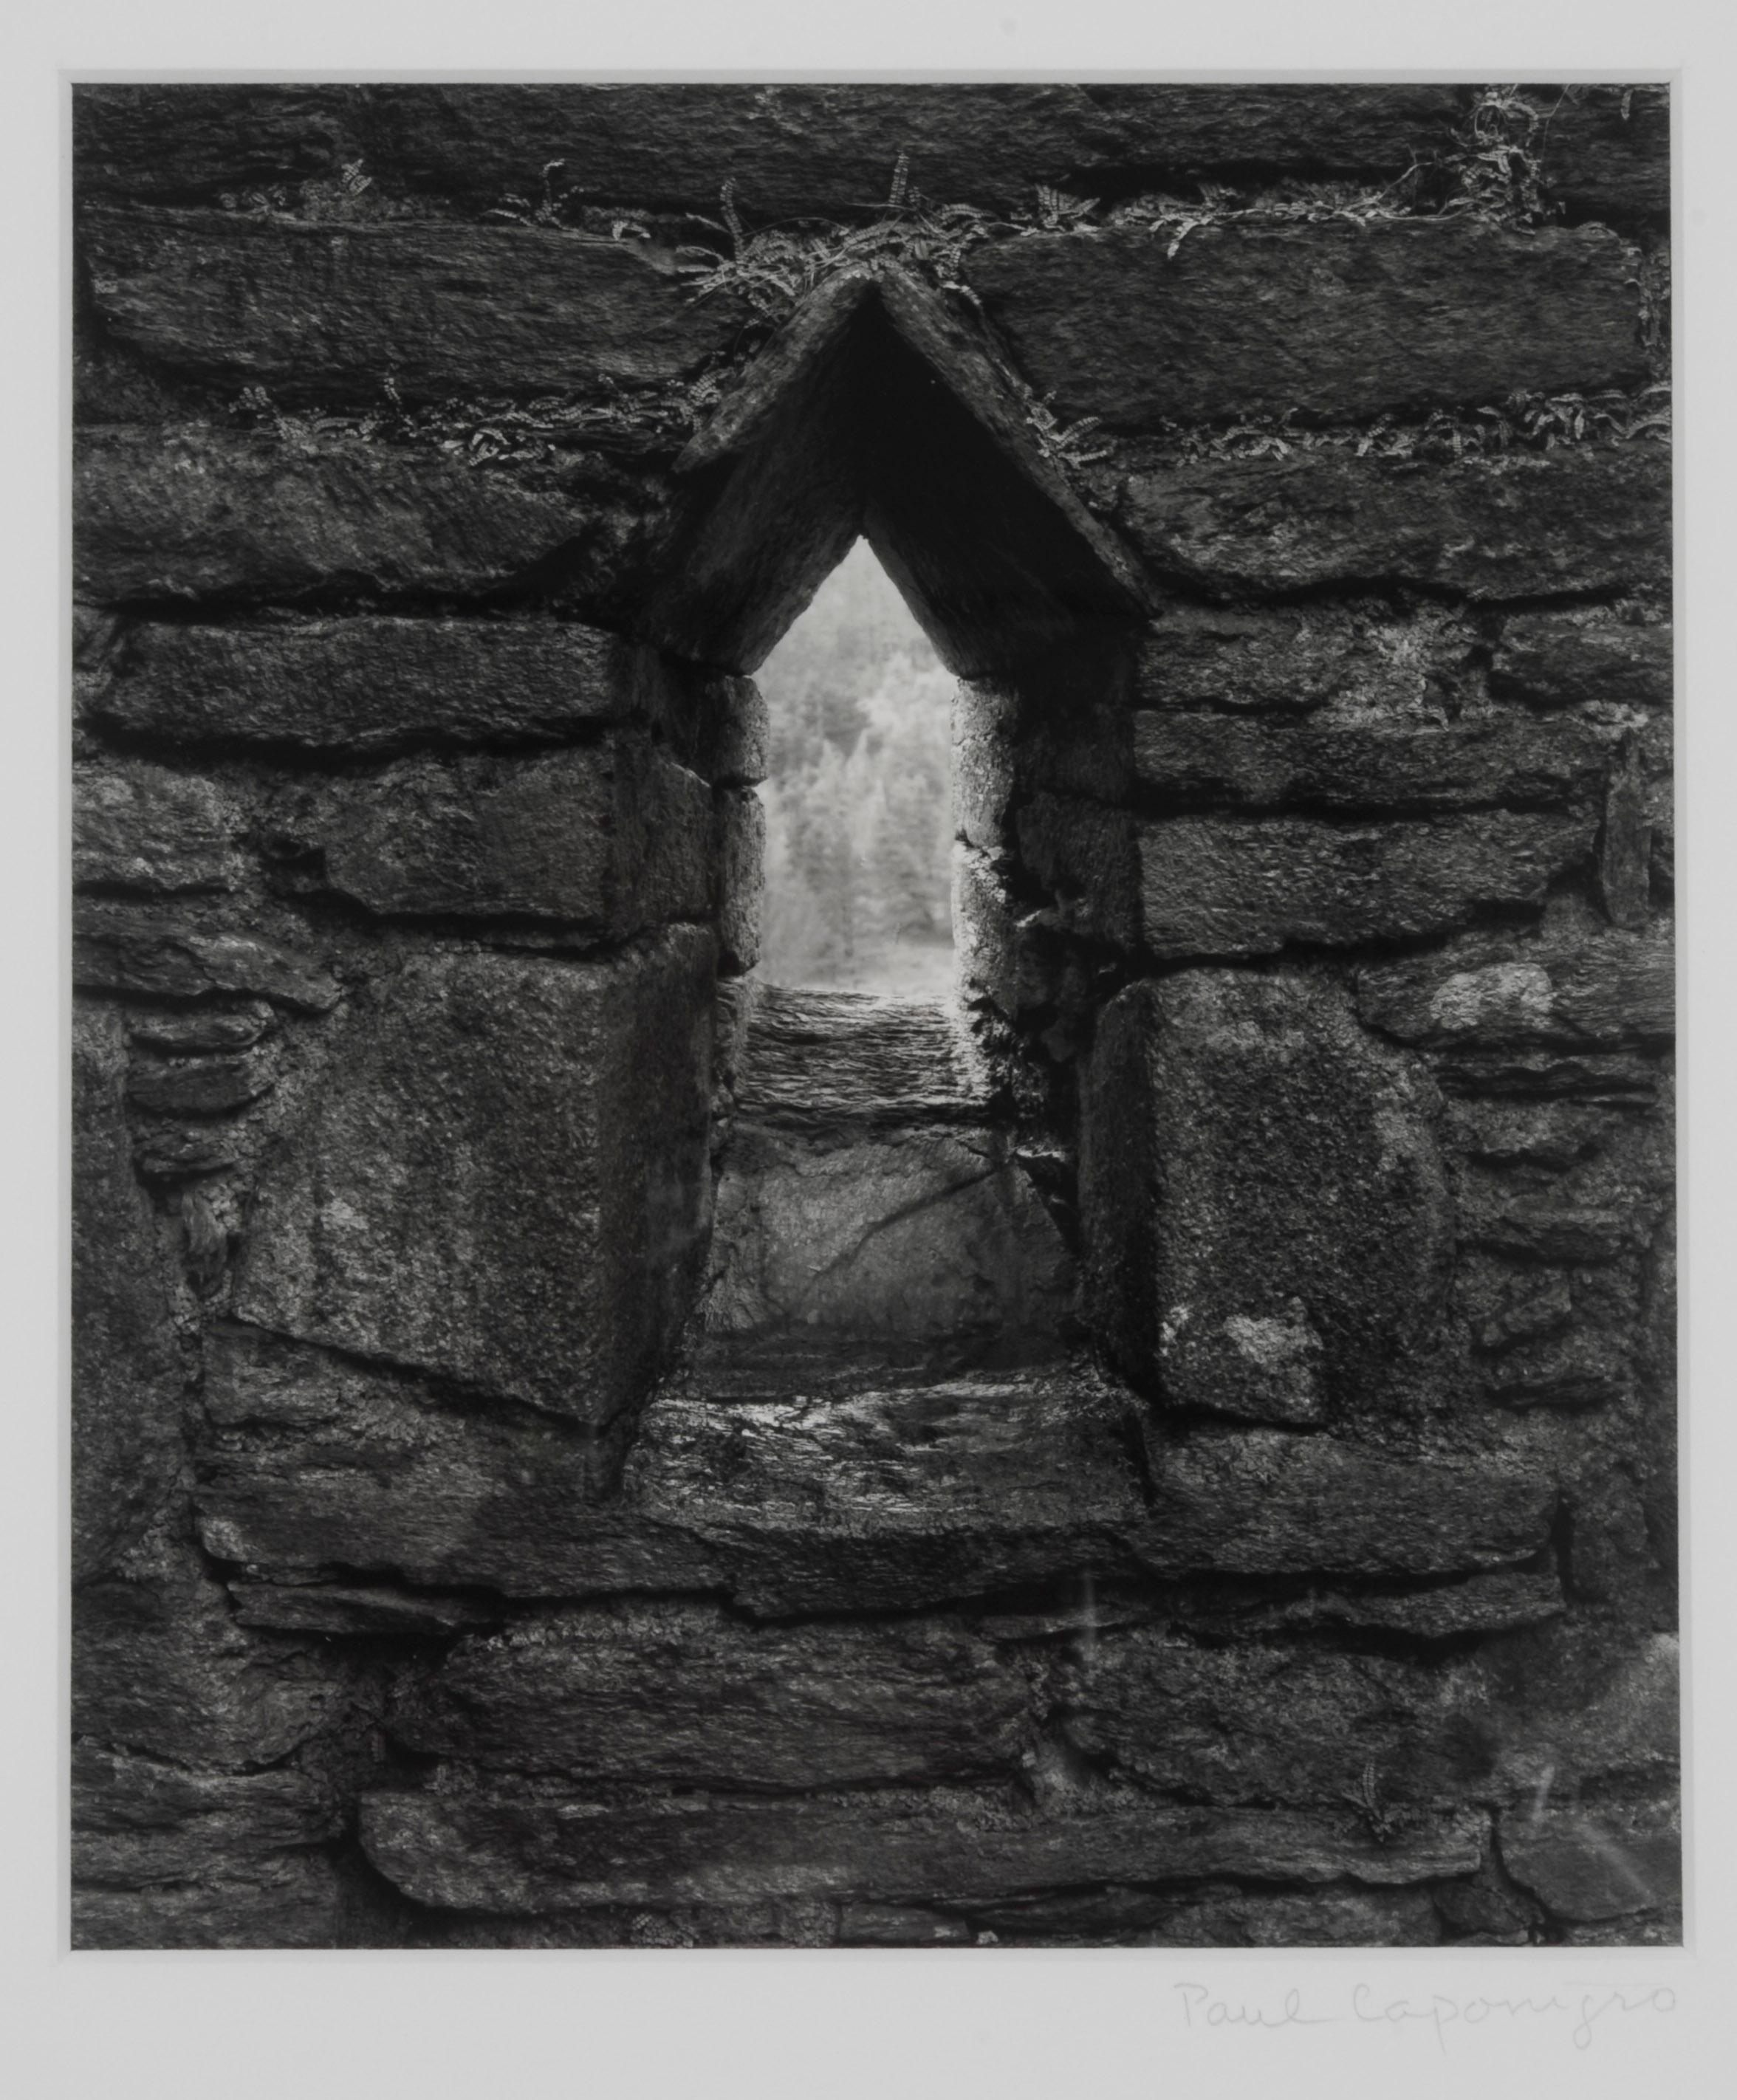 Landscape Photograph Paul Caponigro - Vitrail d'église Glendalough, Wicklow, Irlande